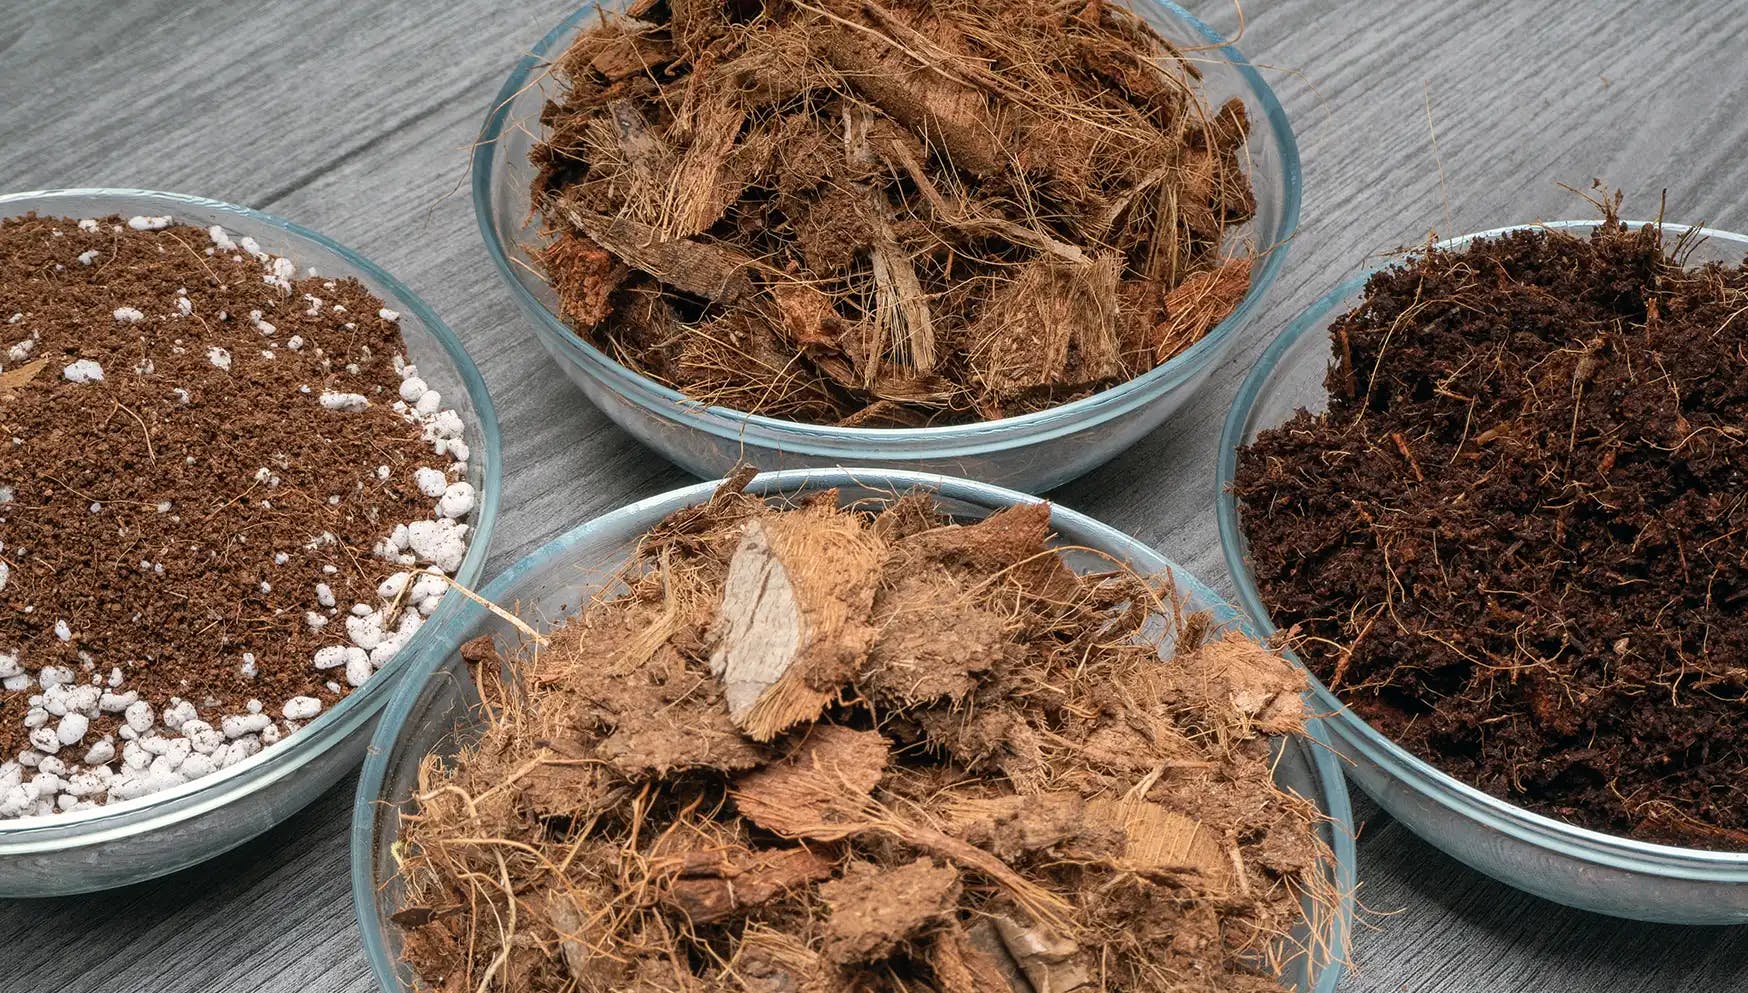 soil, coco fibre, perlite and bark